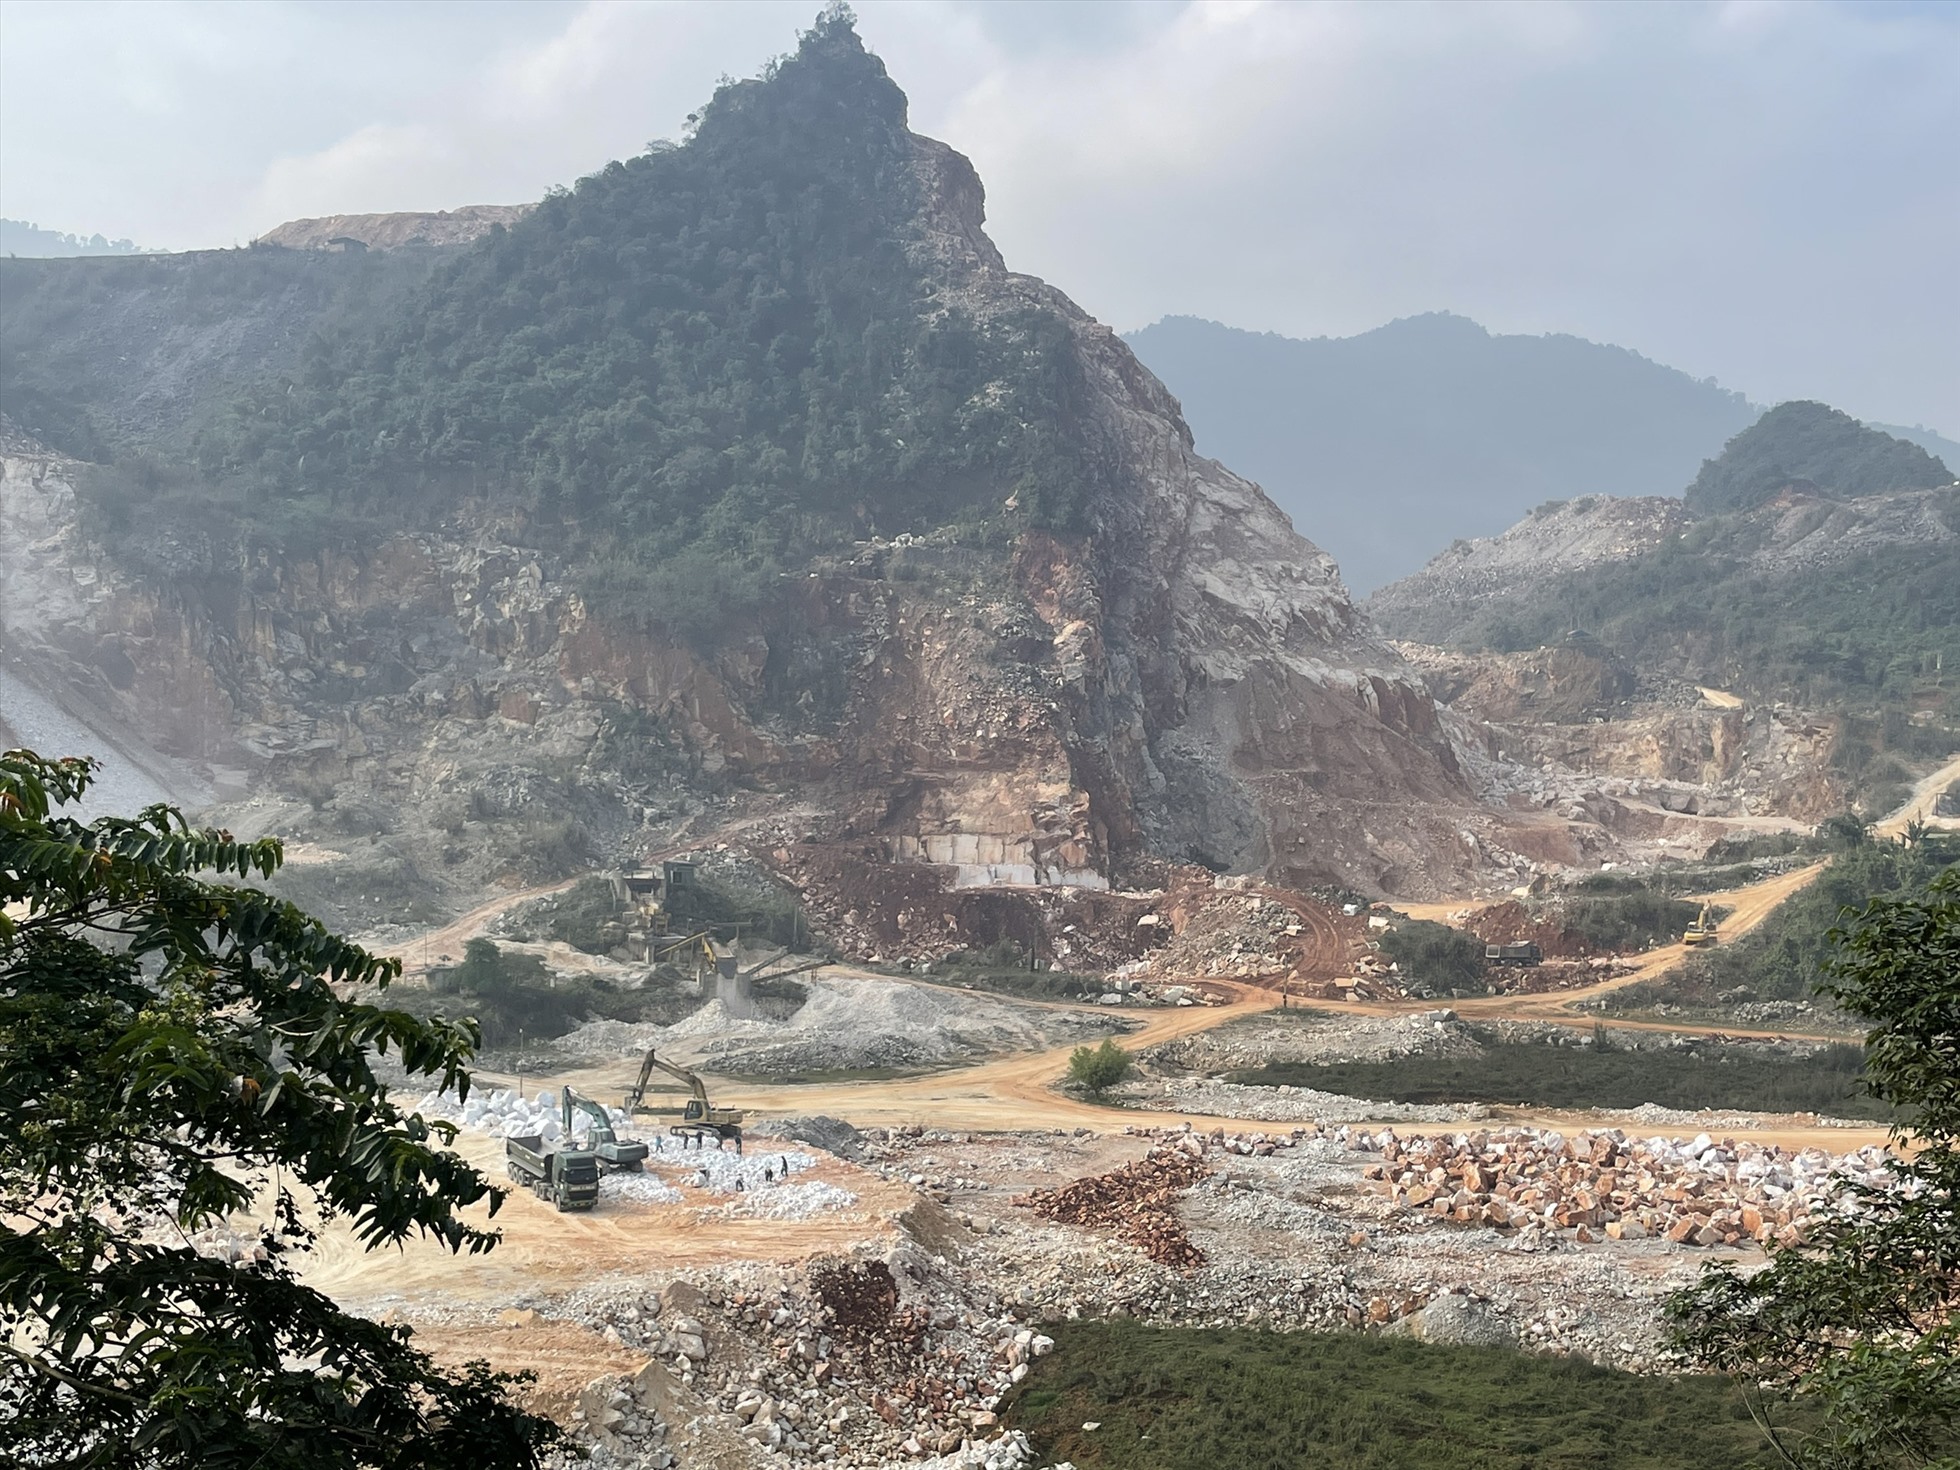 Đồi núi ở Quỳ Hợp bị đào bới nham nhở bởi hoạt động khai thác khoáng sản. Ảnh: Quang Đại